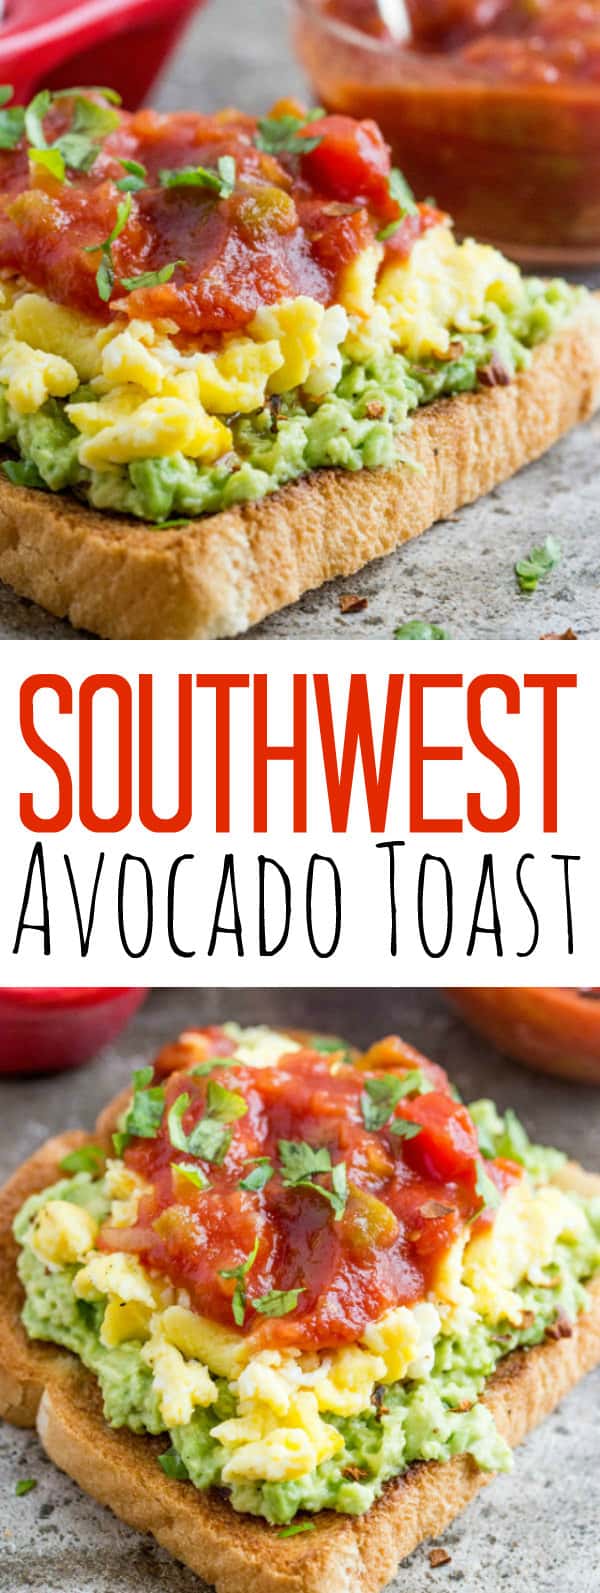 Southwest Avocado Toast